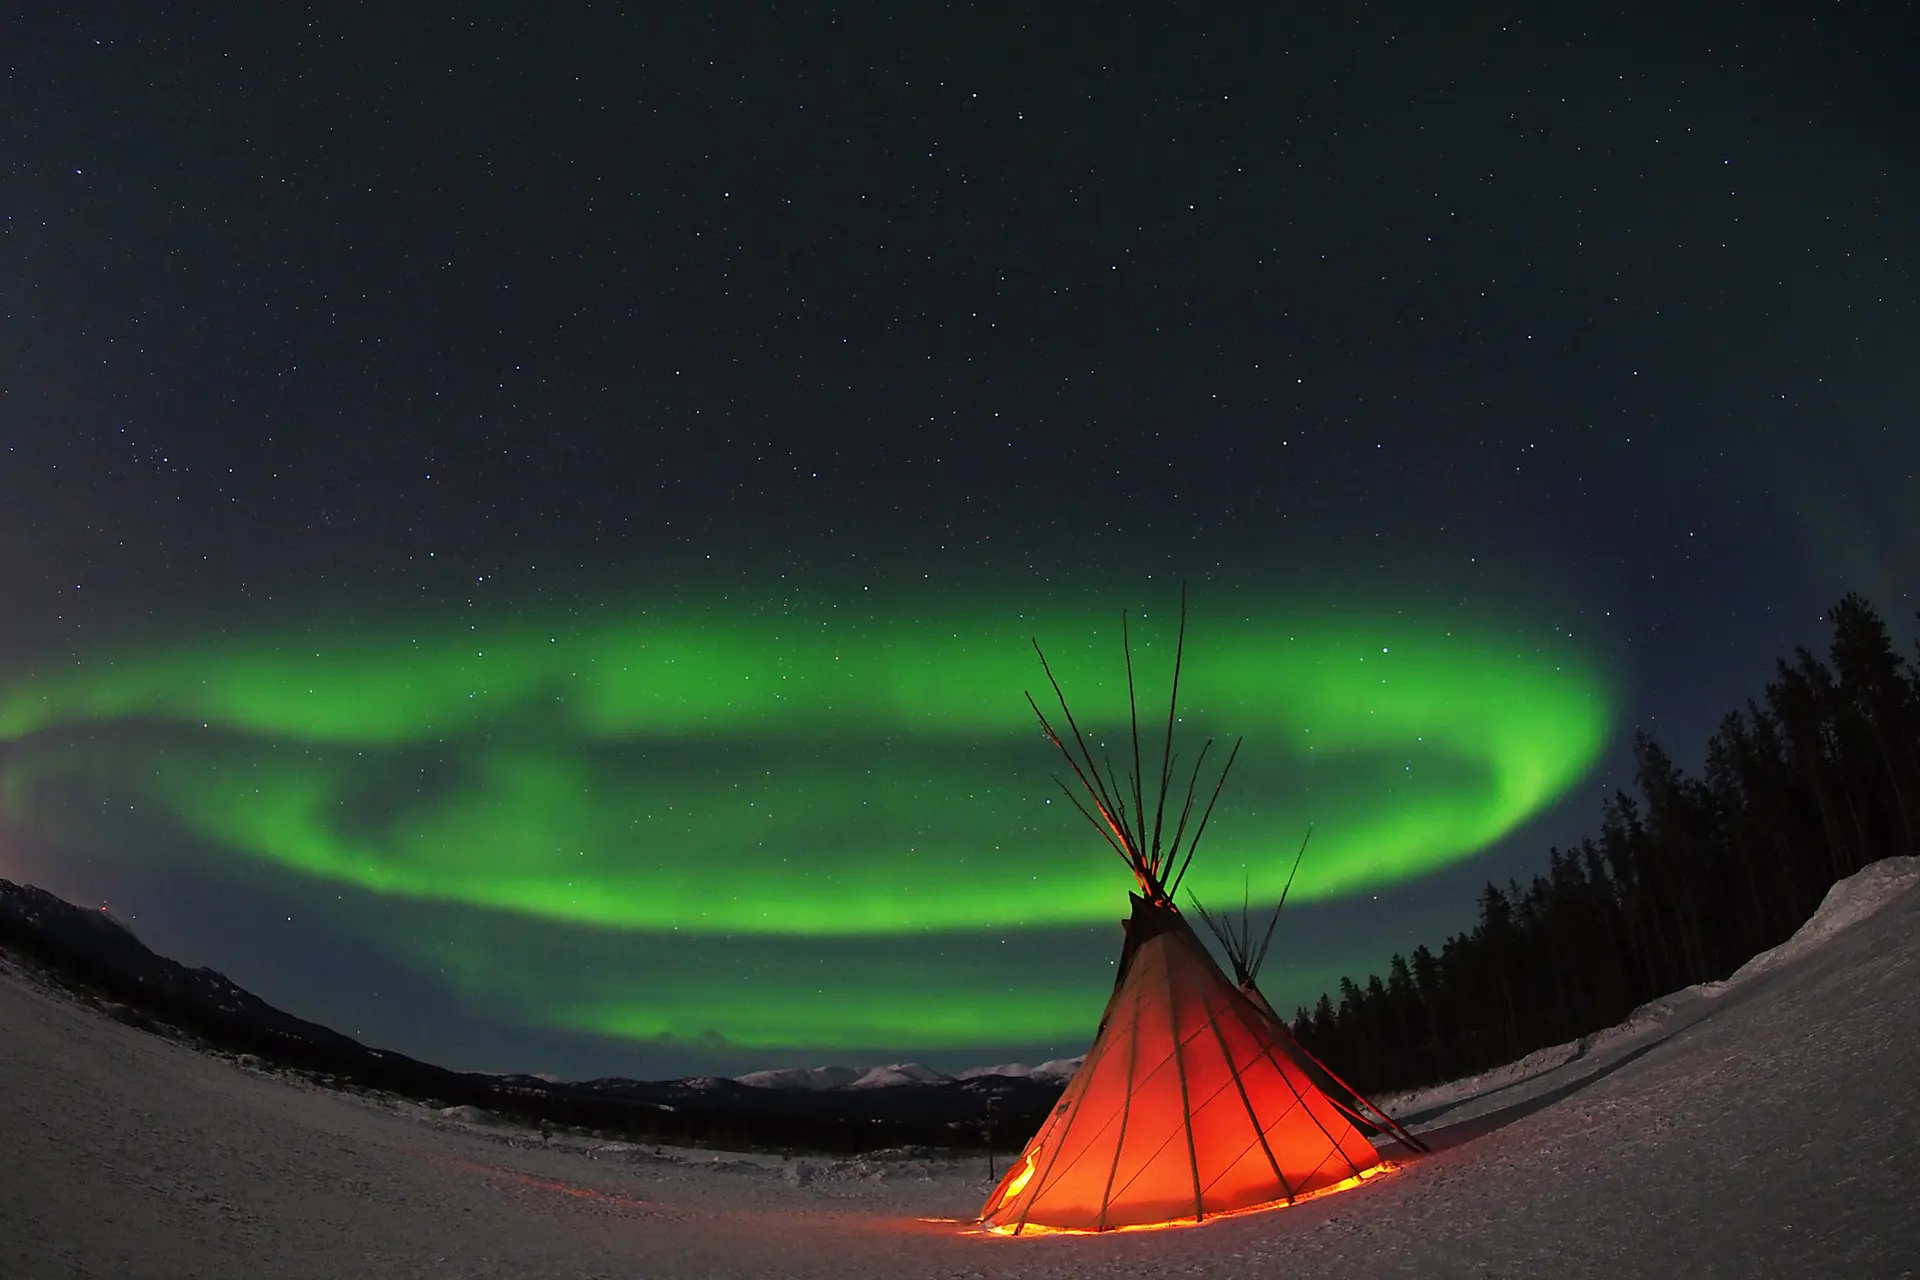 Aurora viewing in Whitehorse, Northwest Territories